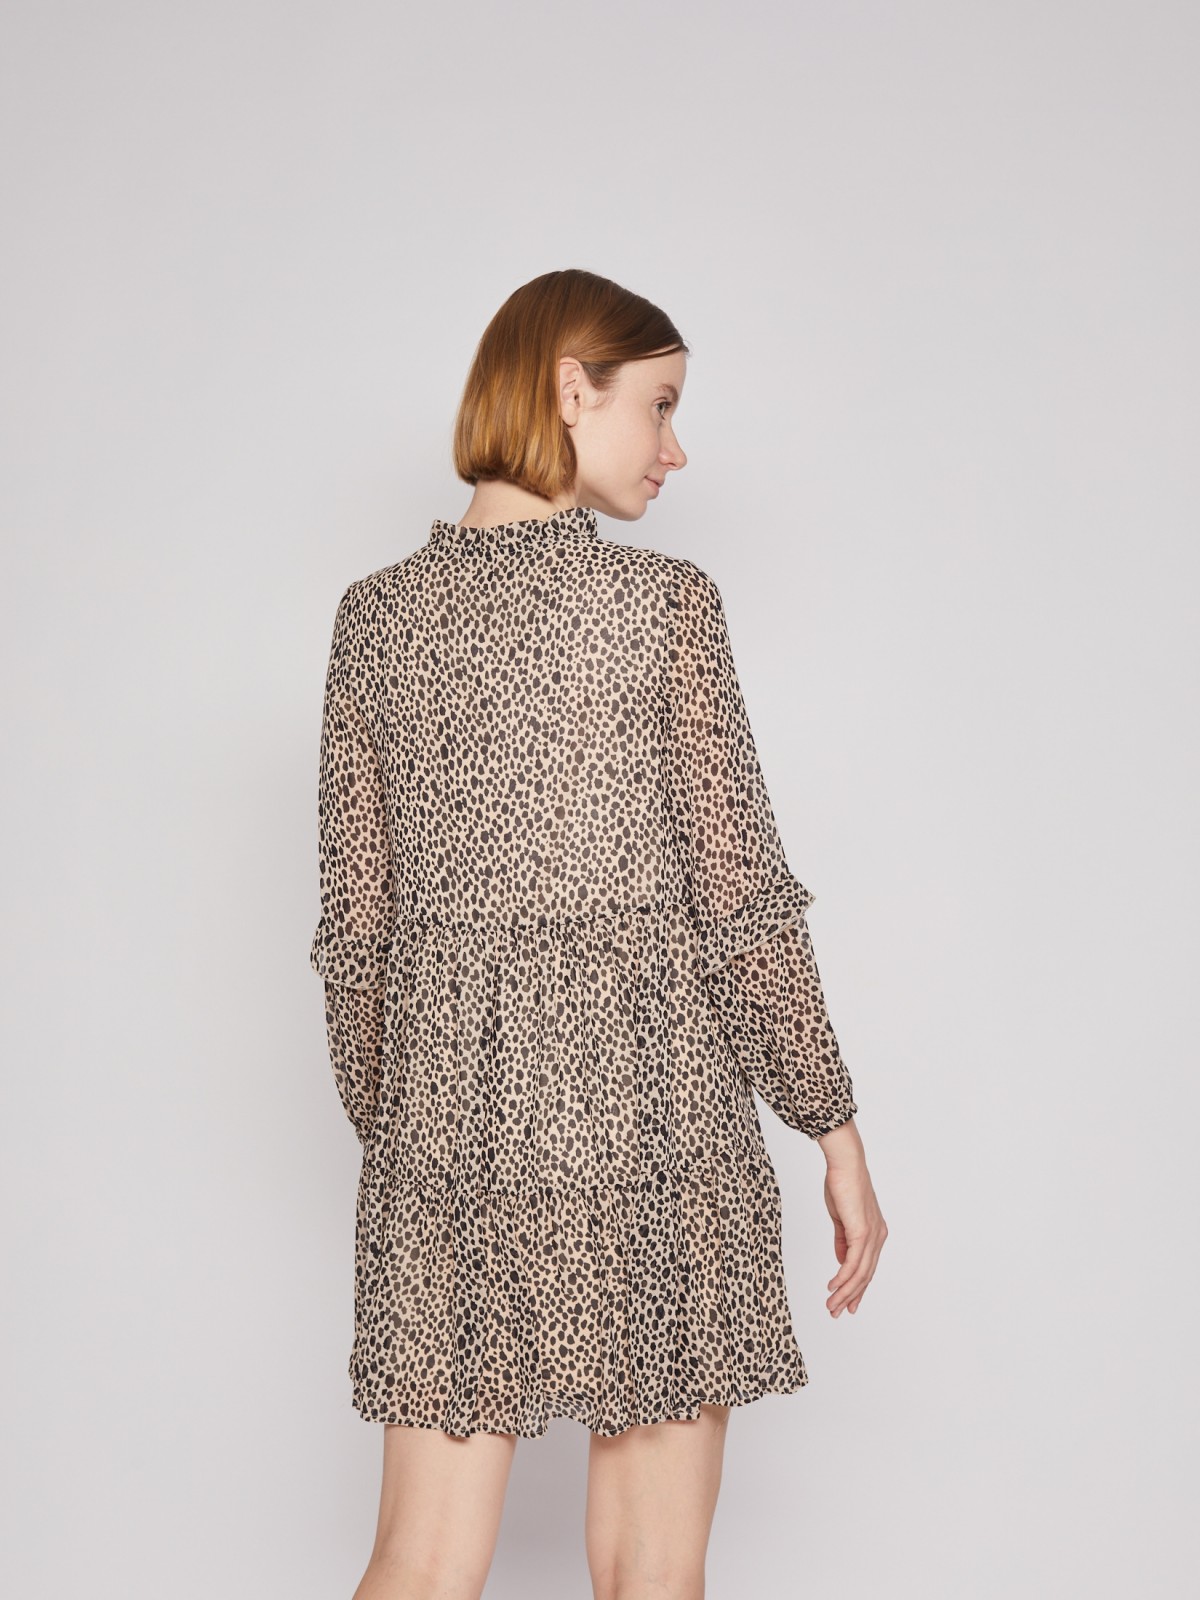 Шифоновое платье с леопардовым принтом zolla 022138262313, цвет бежевый, размер XS - фото 6